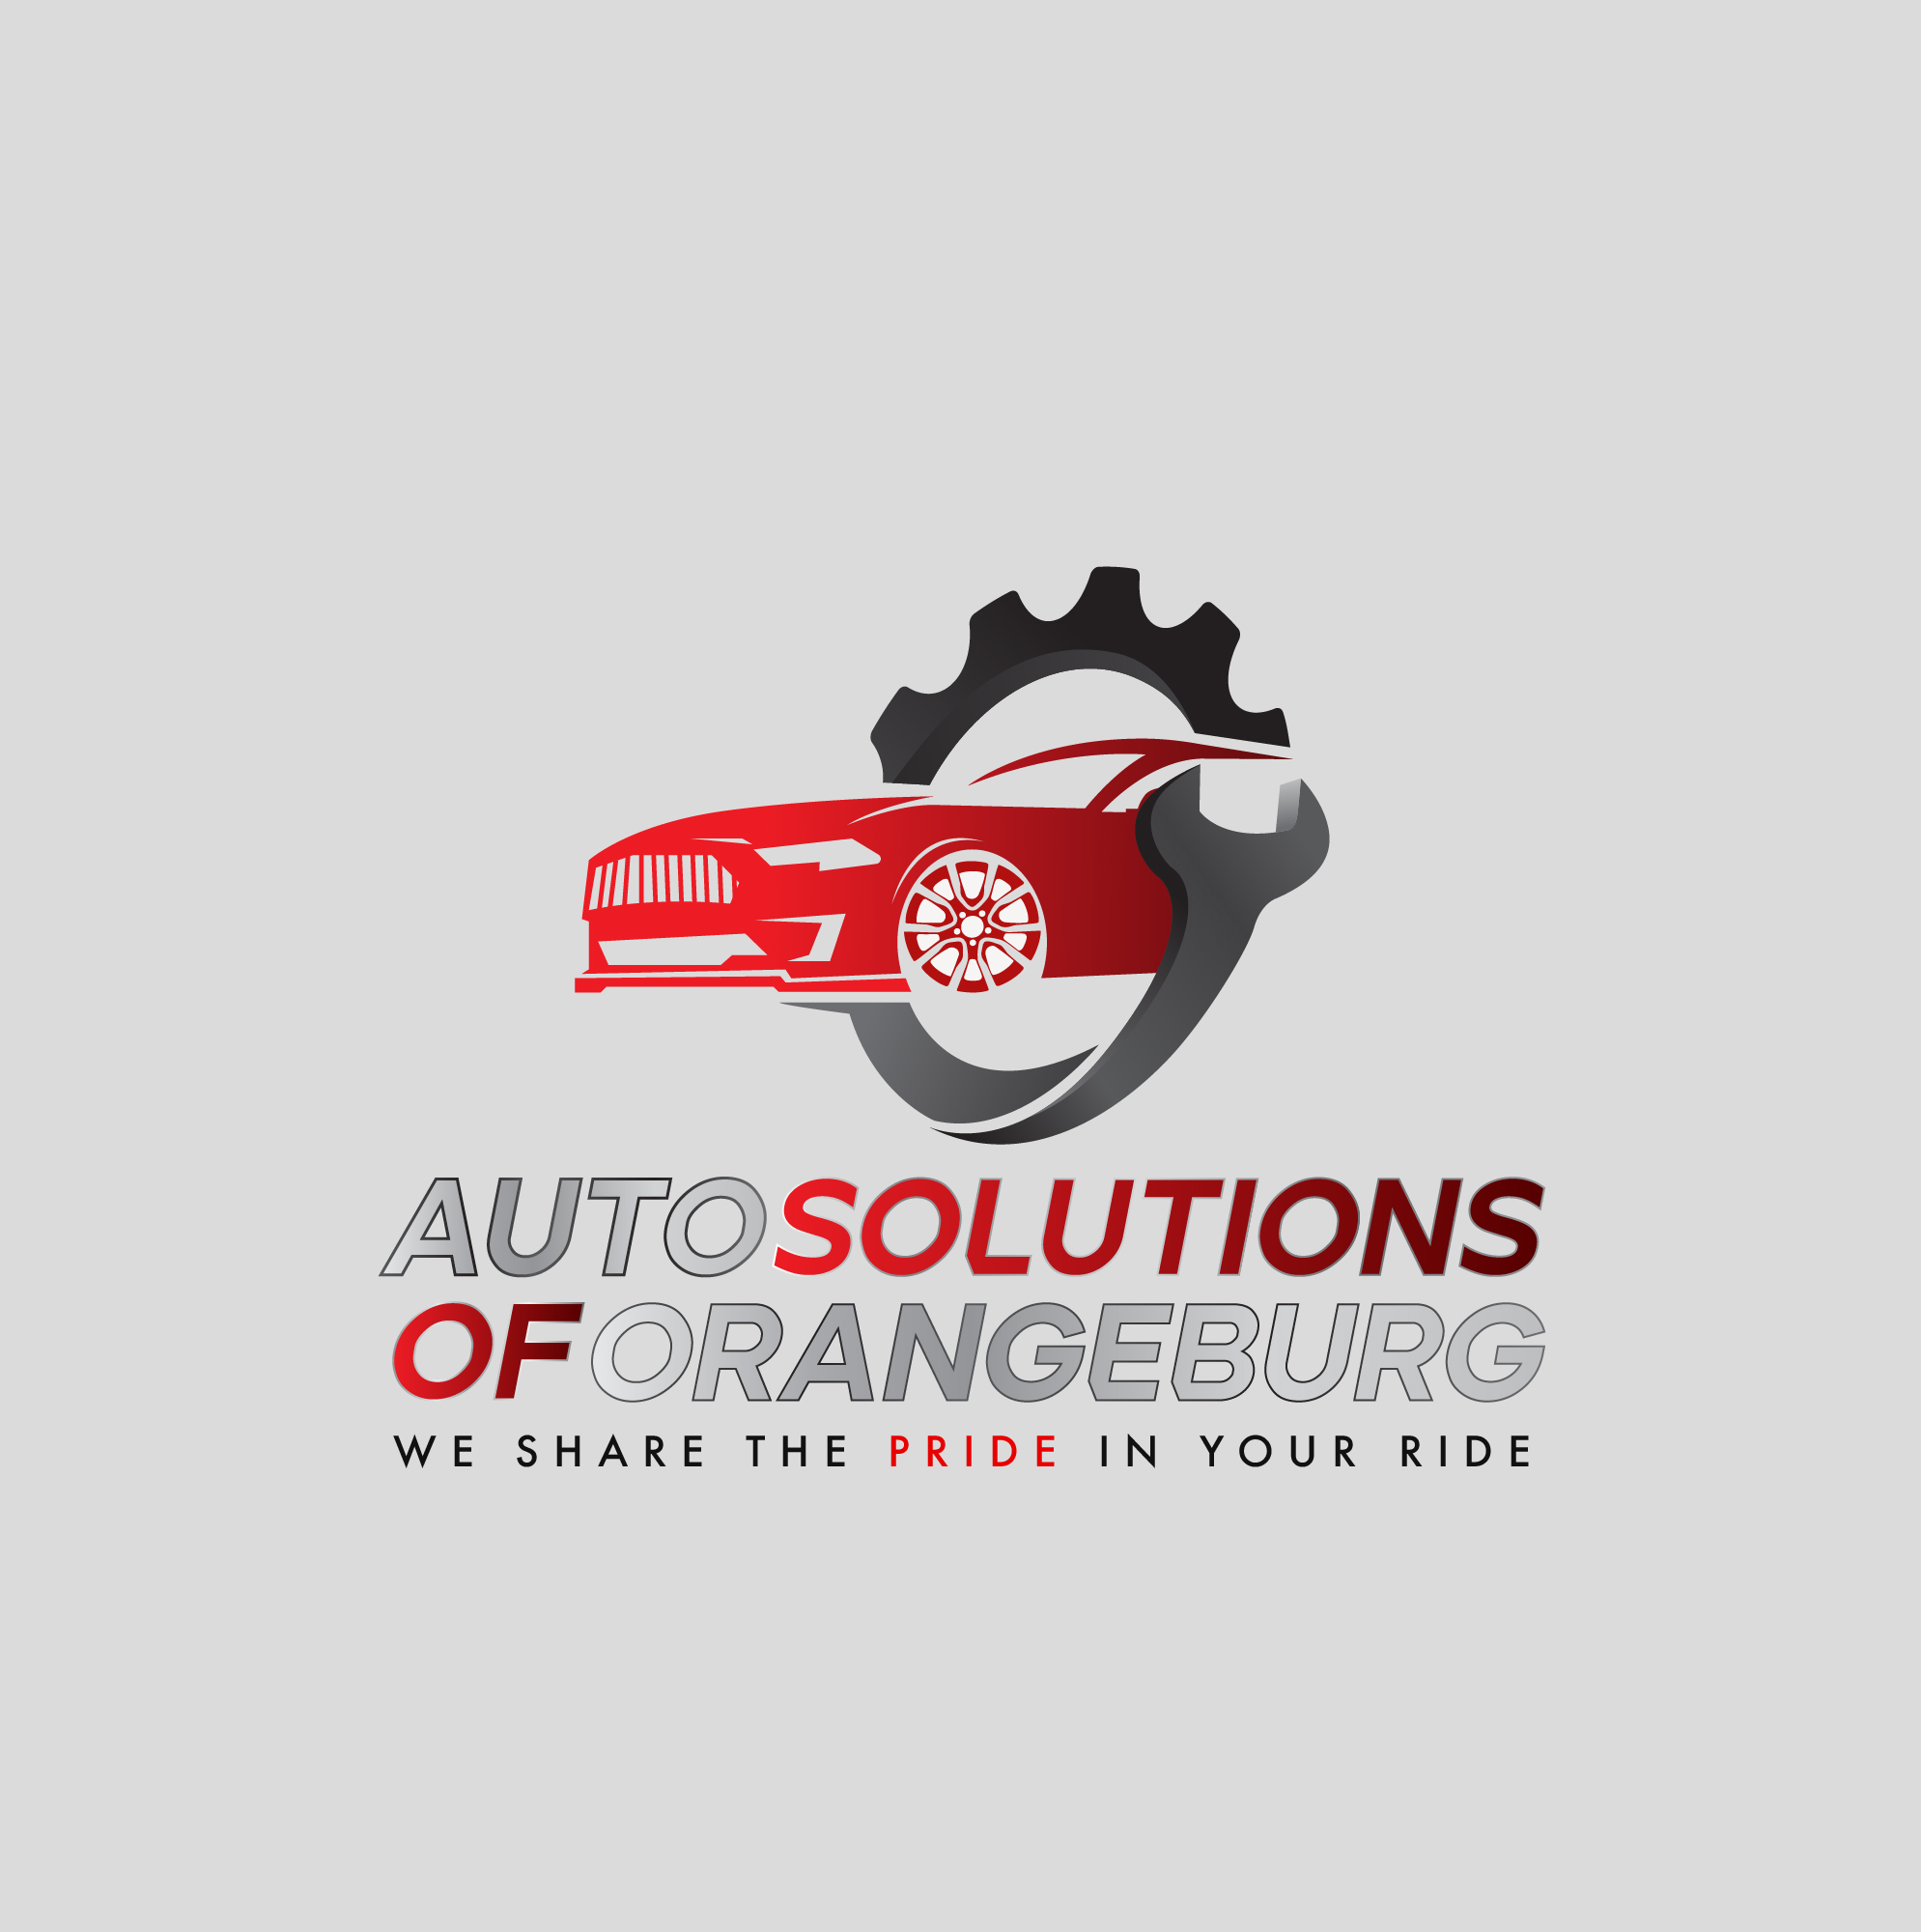 Auto Solutions of Orangeburg